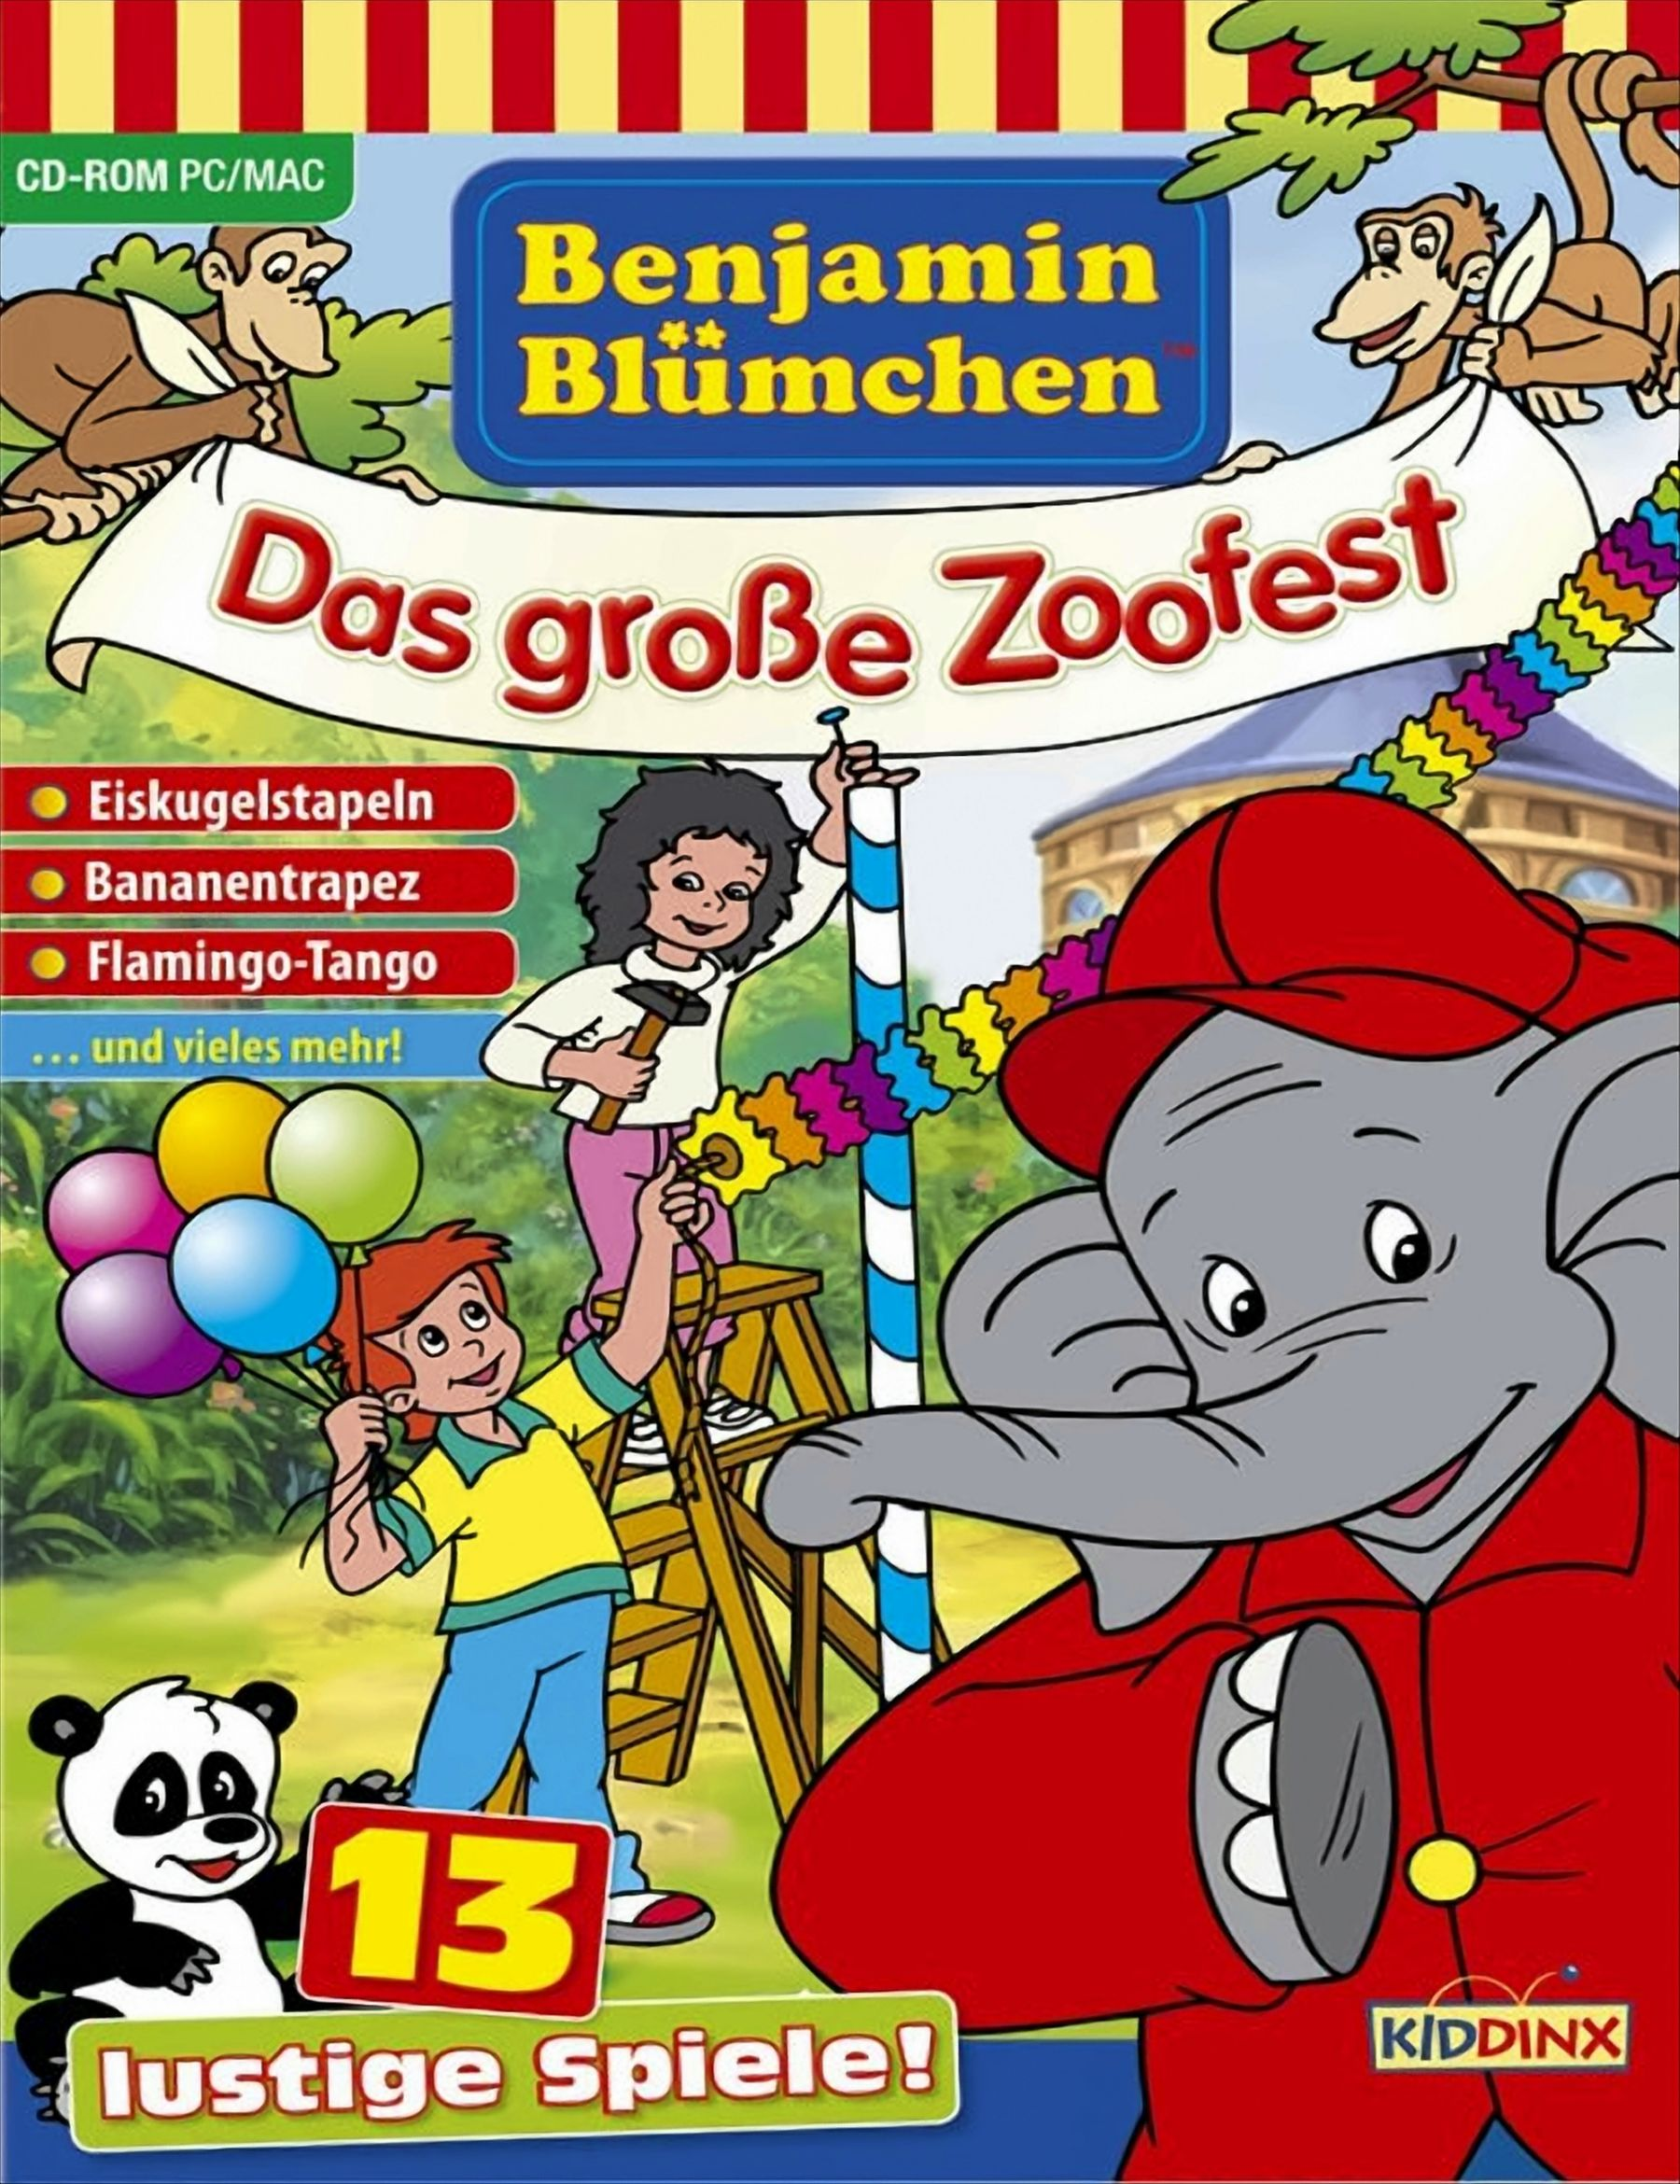 Benjamin Blümchen: Das große - Zoofest [PC